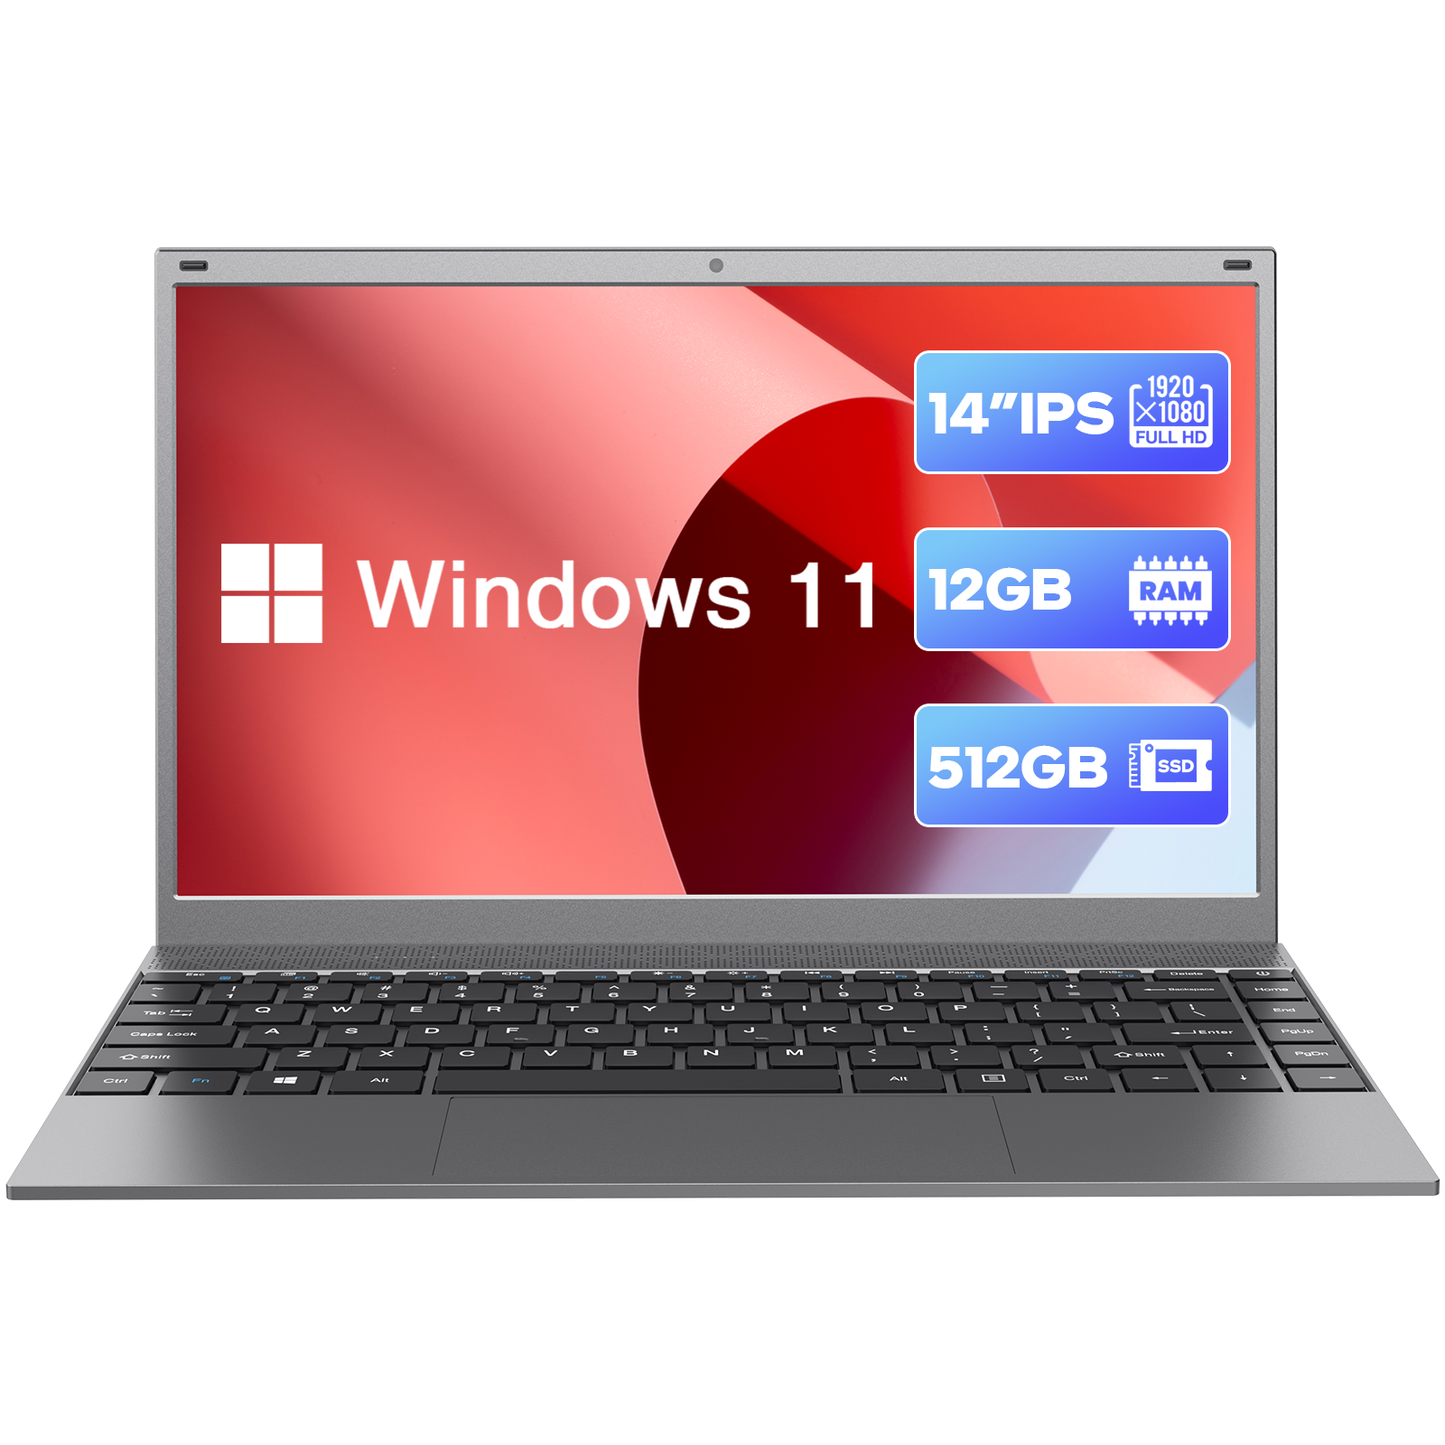 Shop Windows Laptops